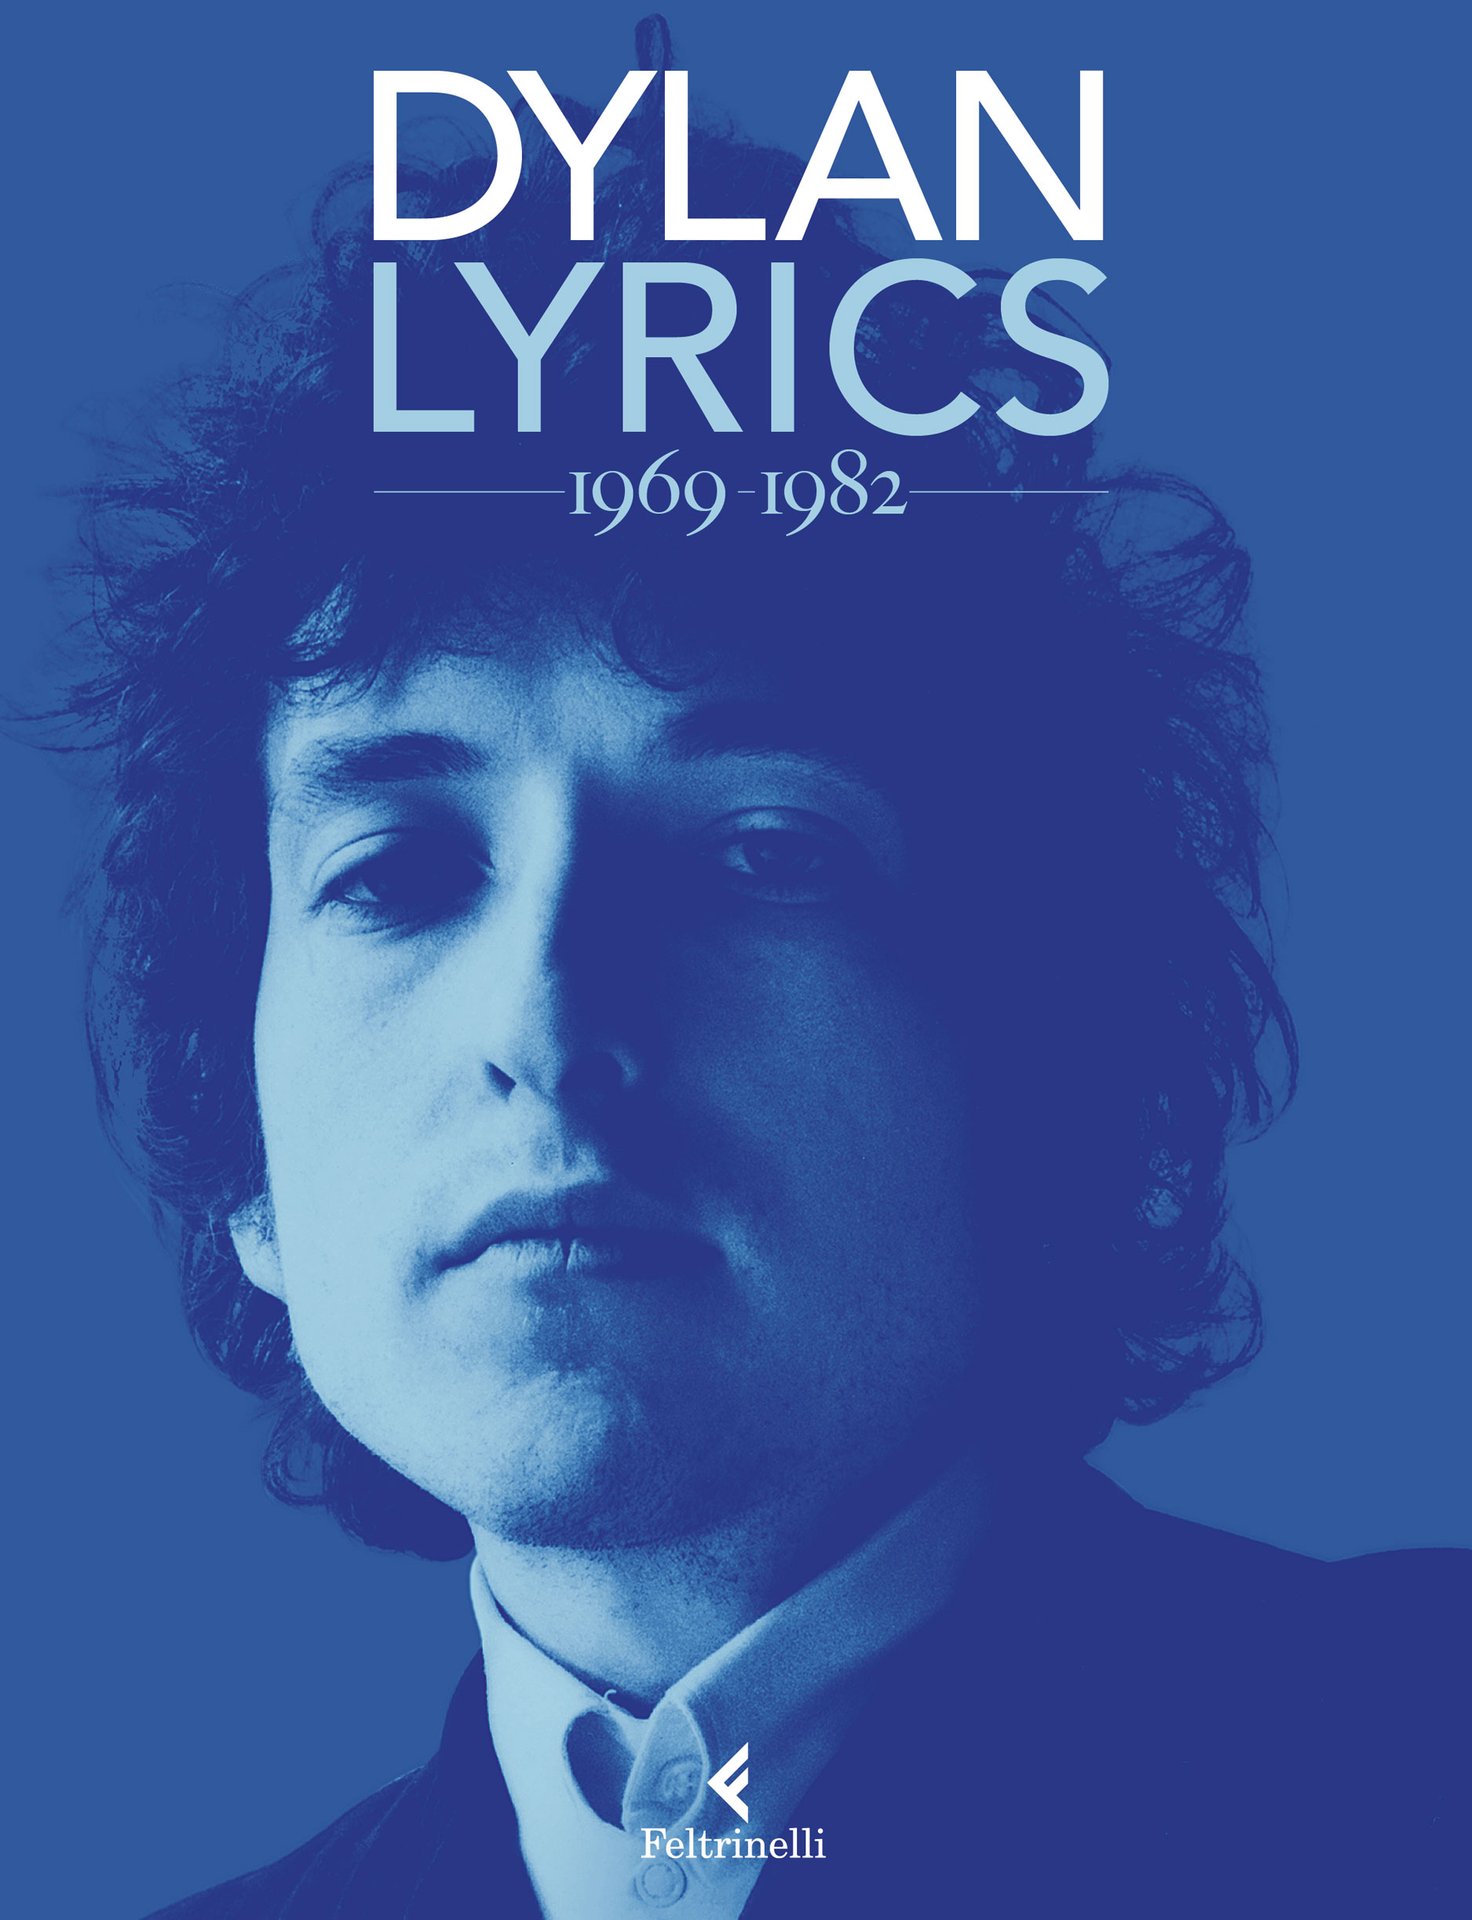 Lyrics 1969 - 1982